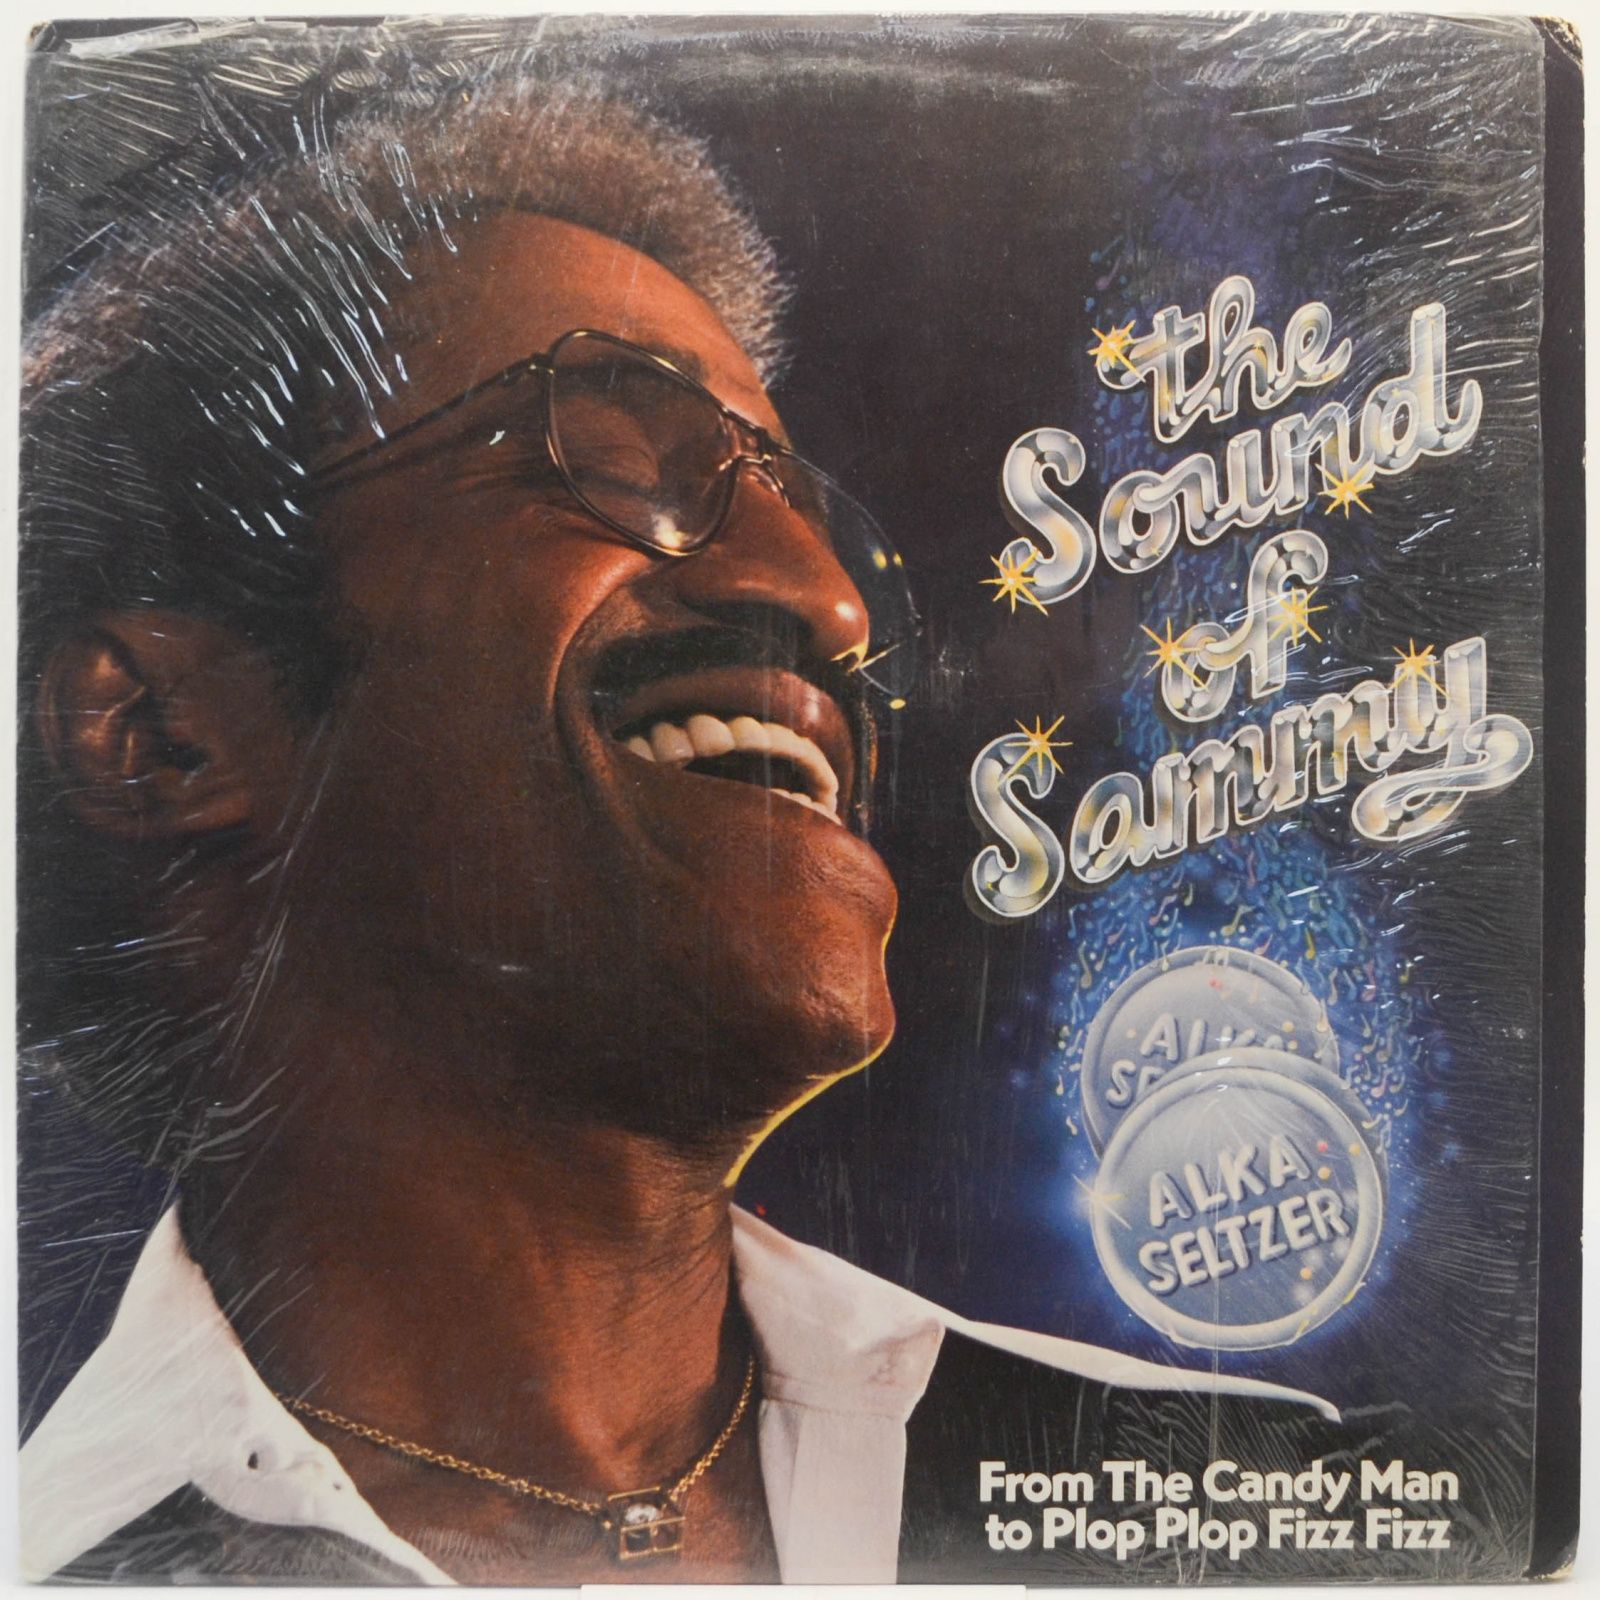 Sammy Davis Jr. — The Sound Of Sammy (From The Candy Man To Plop Plop Fizz Fizz), 1978